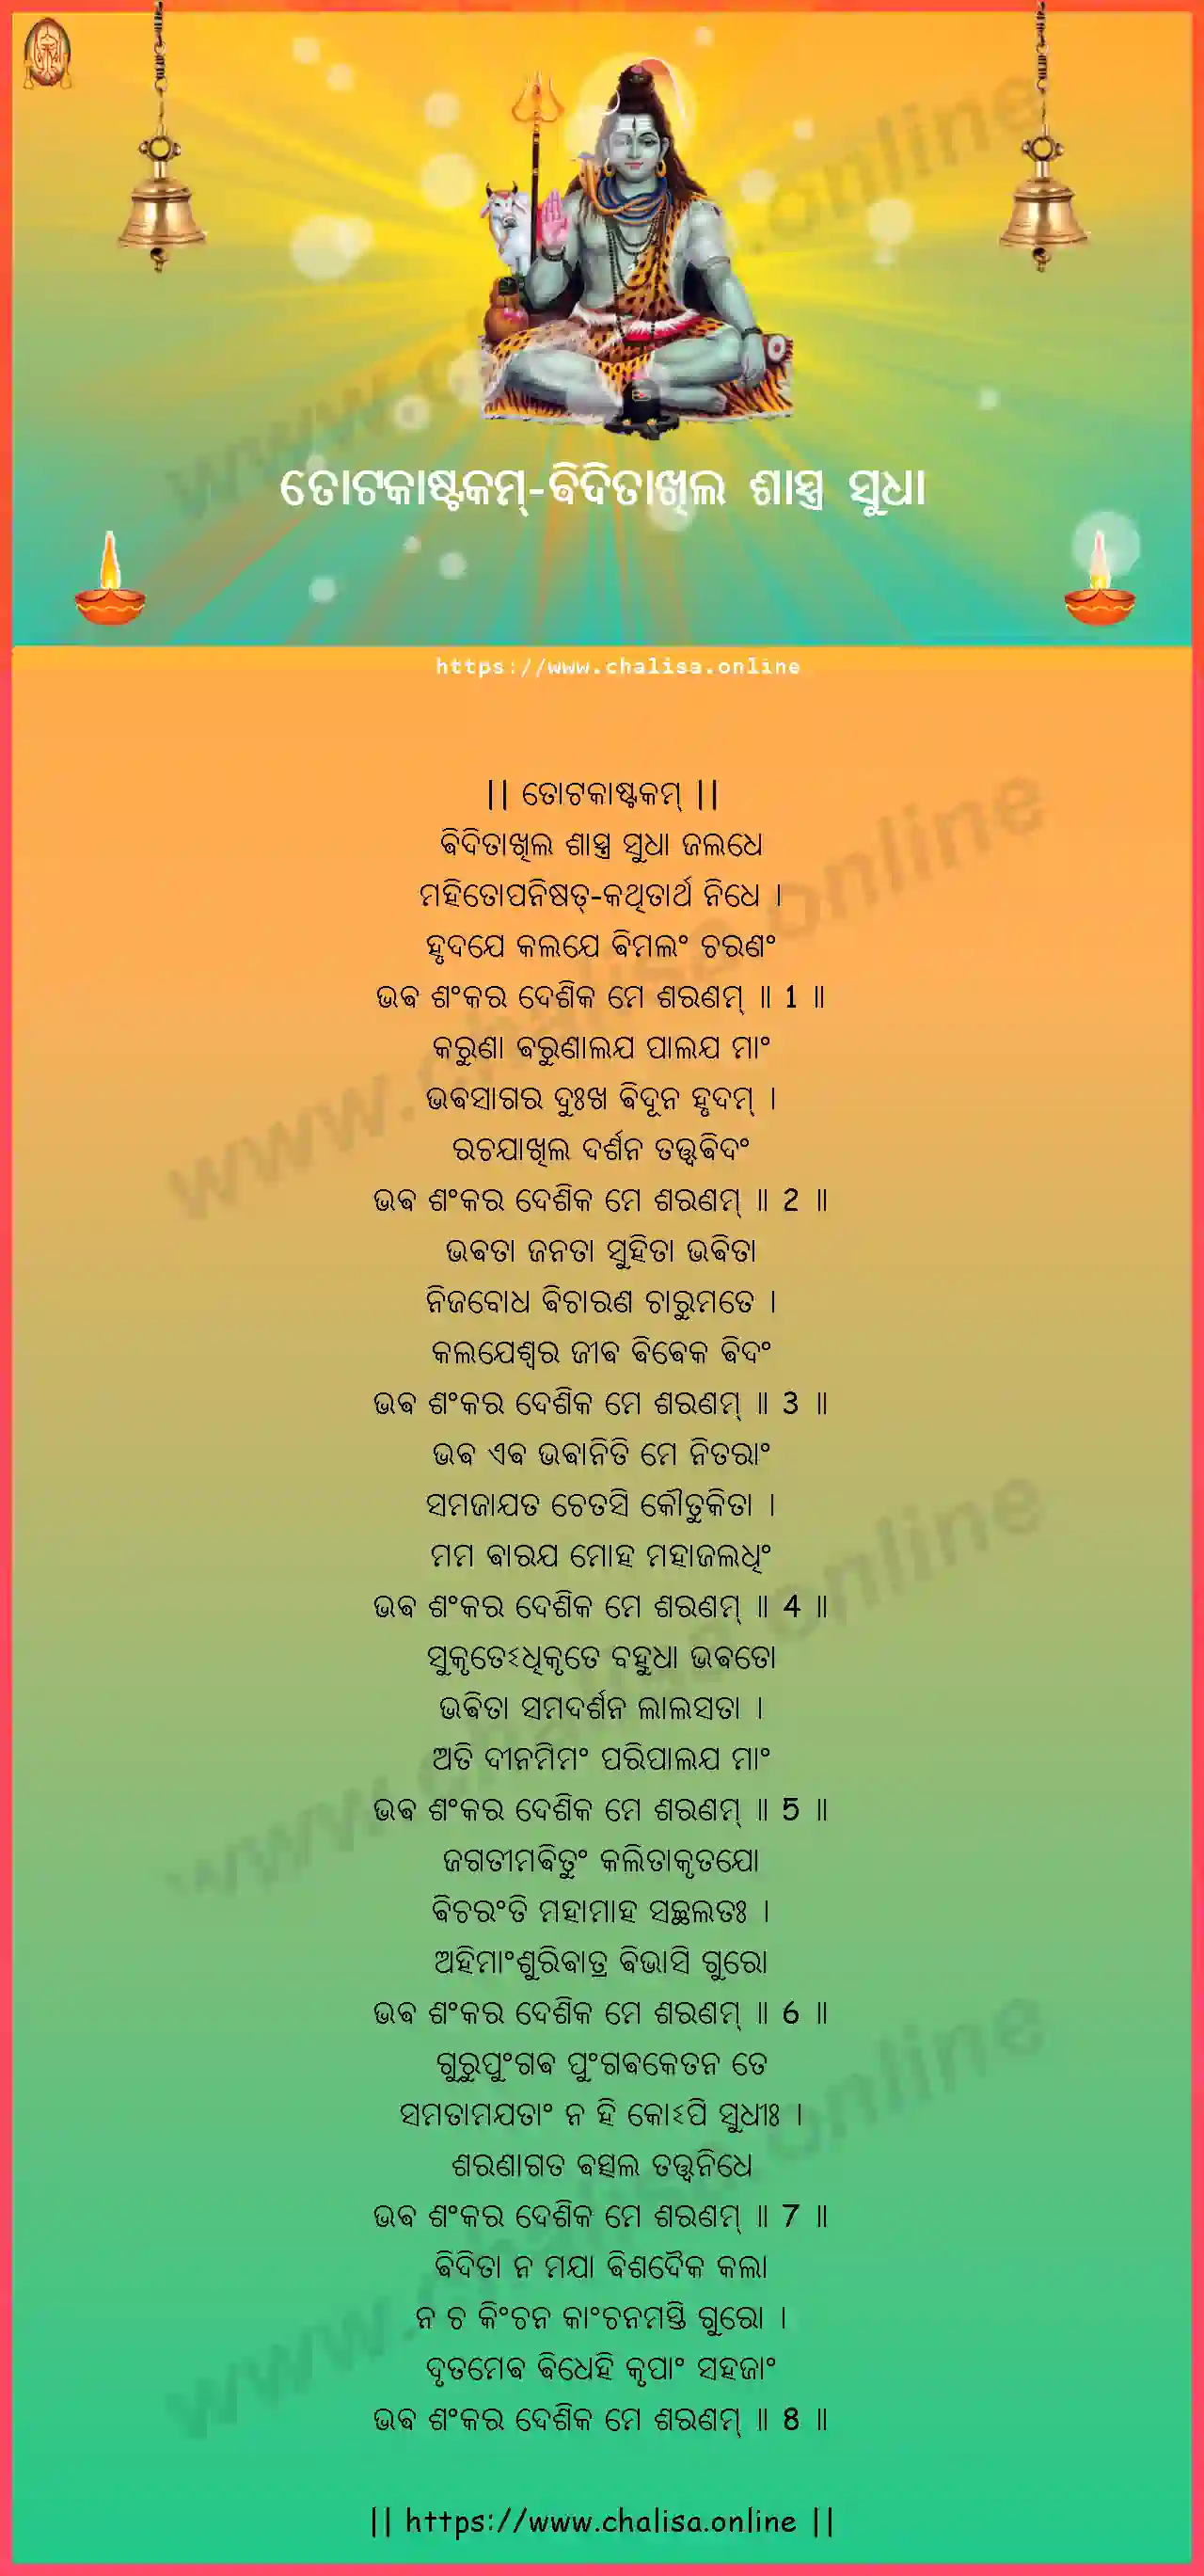 viditakhila-sastra-totakashtakam-oriya-oriya-lyrics-download